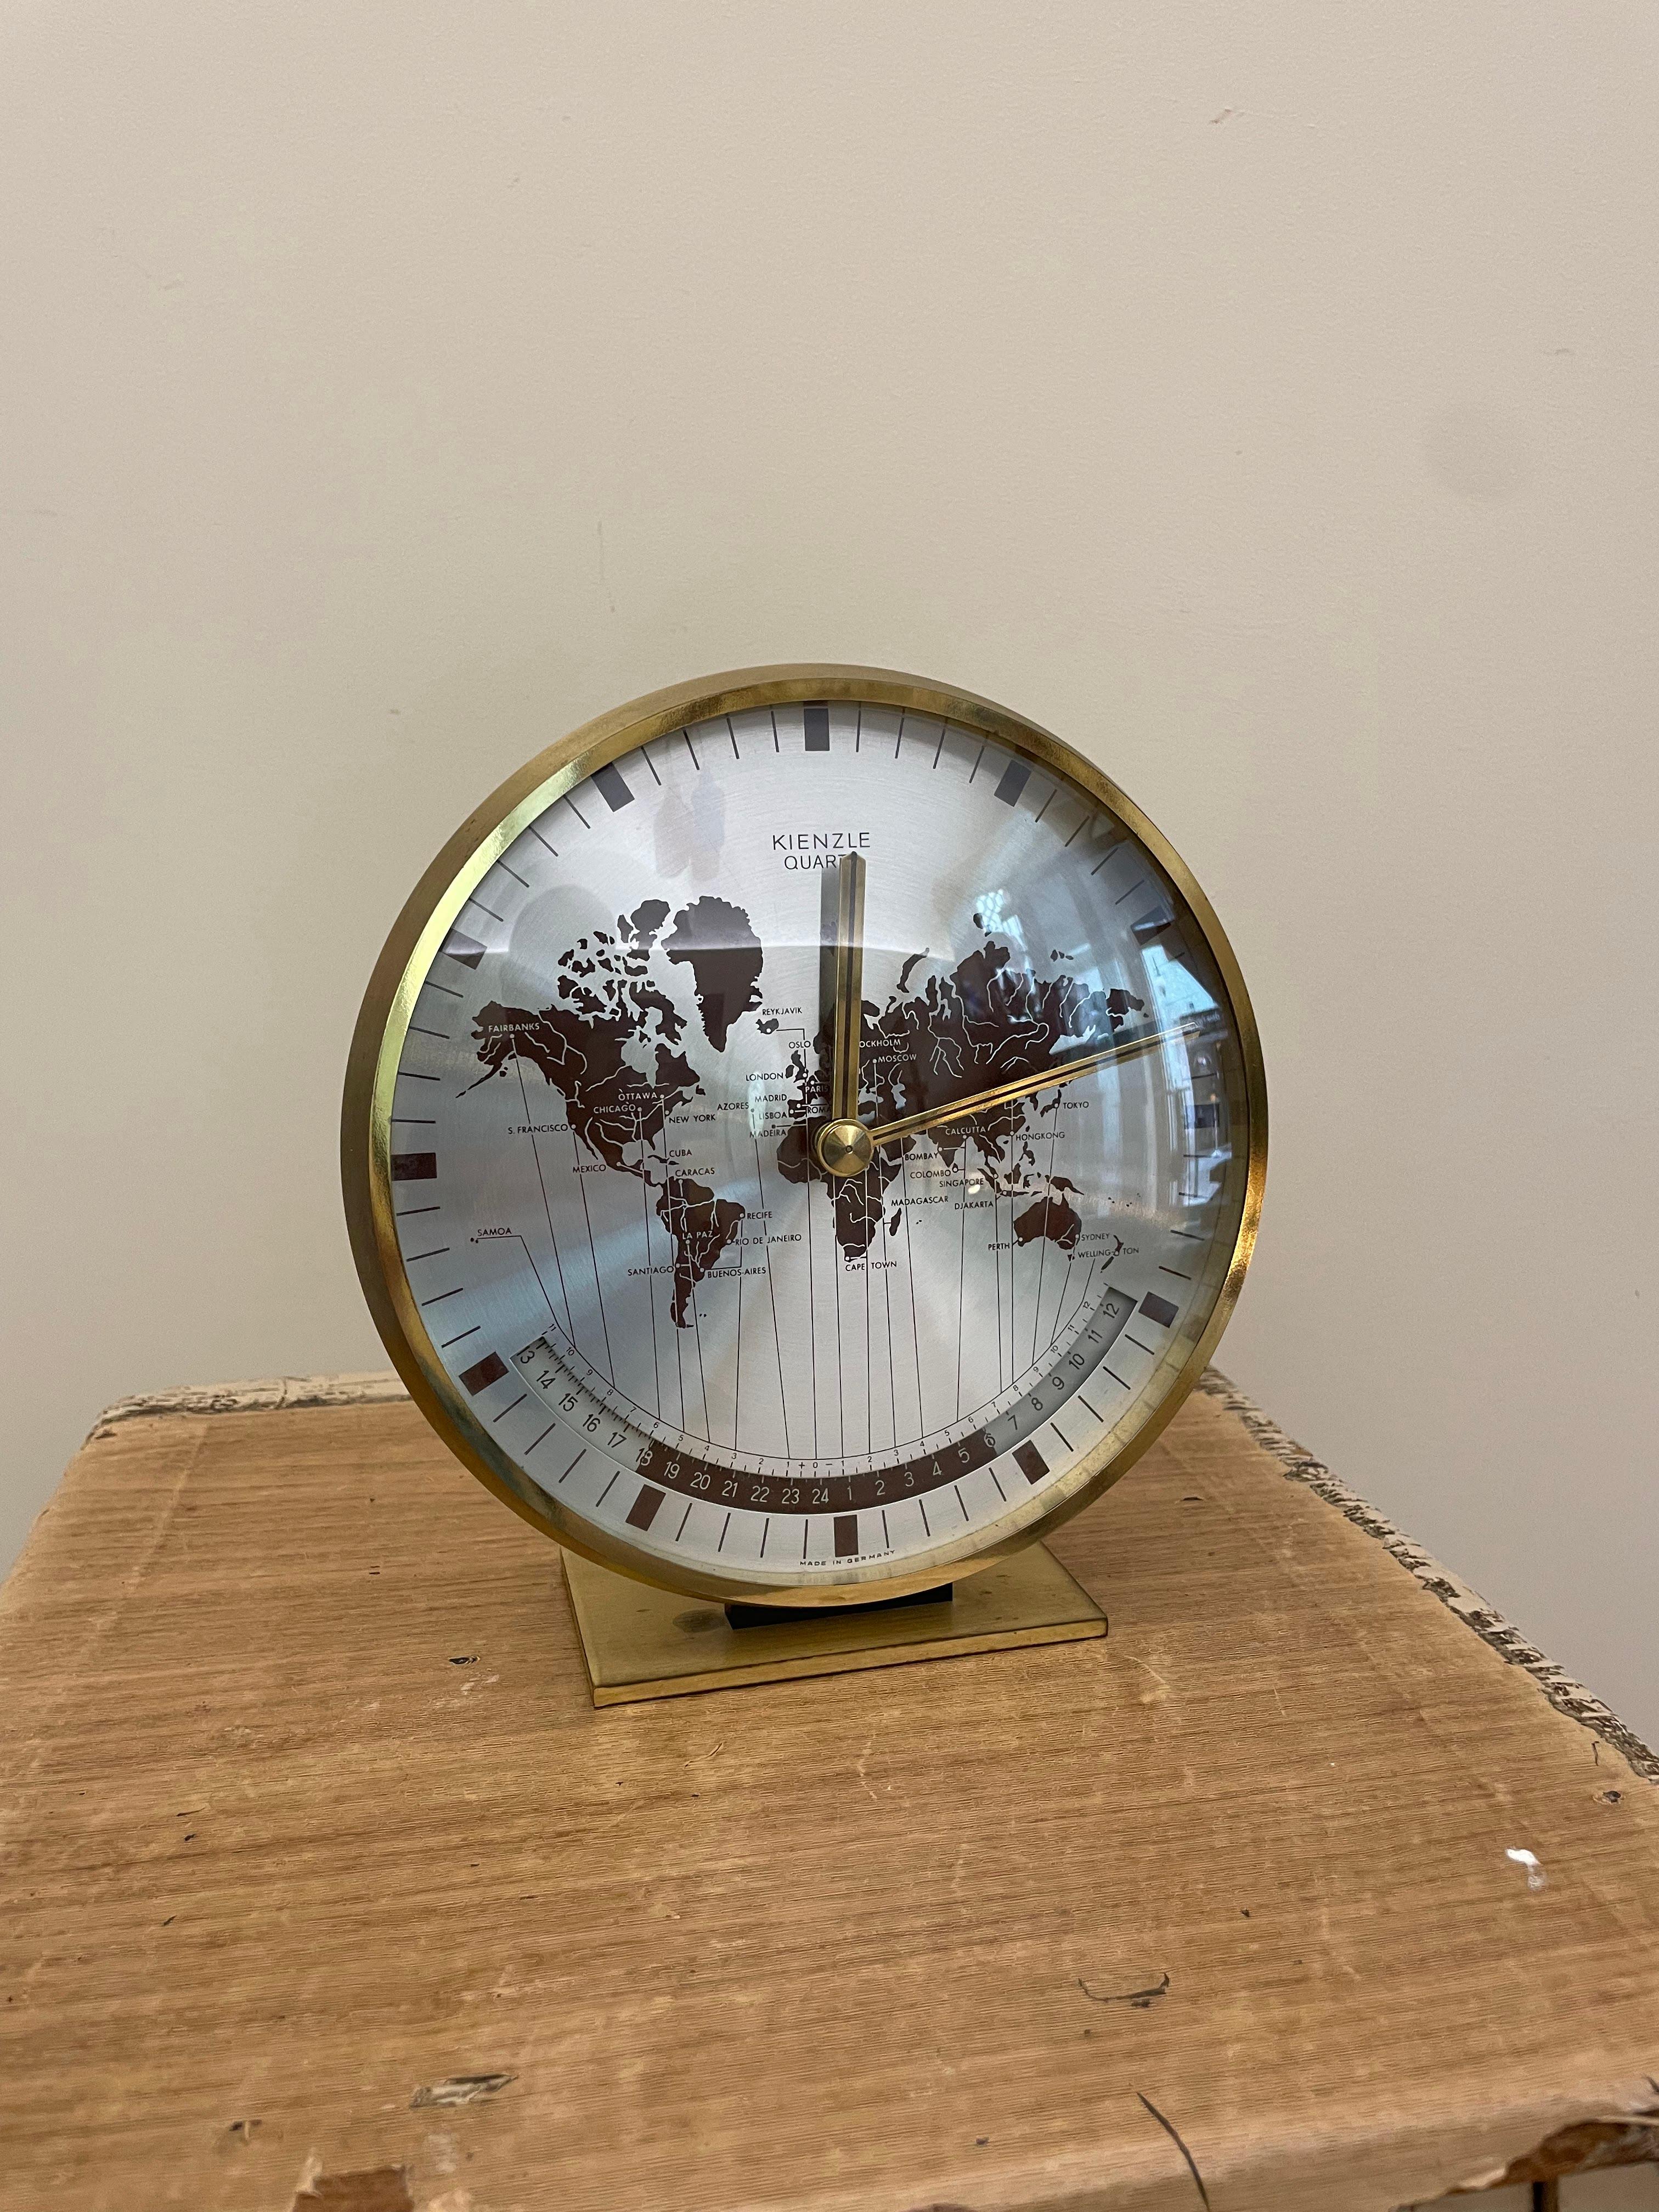 Horloge universelle conçue par Heinrich Möller pour Kienzle International dans les années 1970.

La montre est équipée d'un mouvement à quartz et fonctionne parfaitement avec une pile AA. Le carillon des aiguilles est parfaitement audible.

Il peut